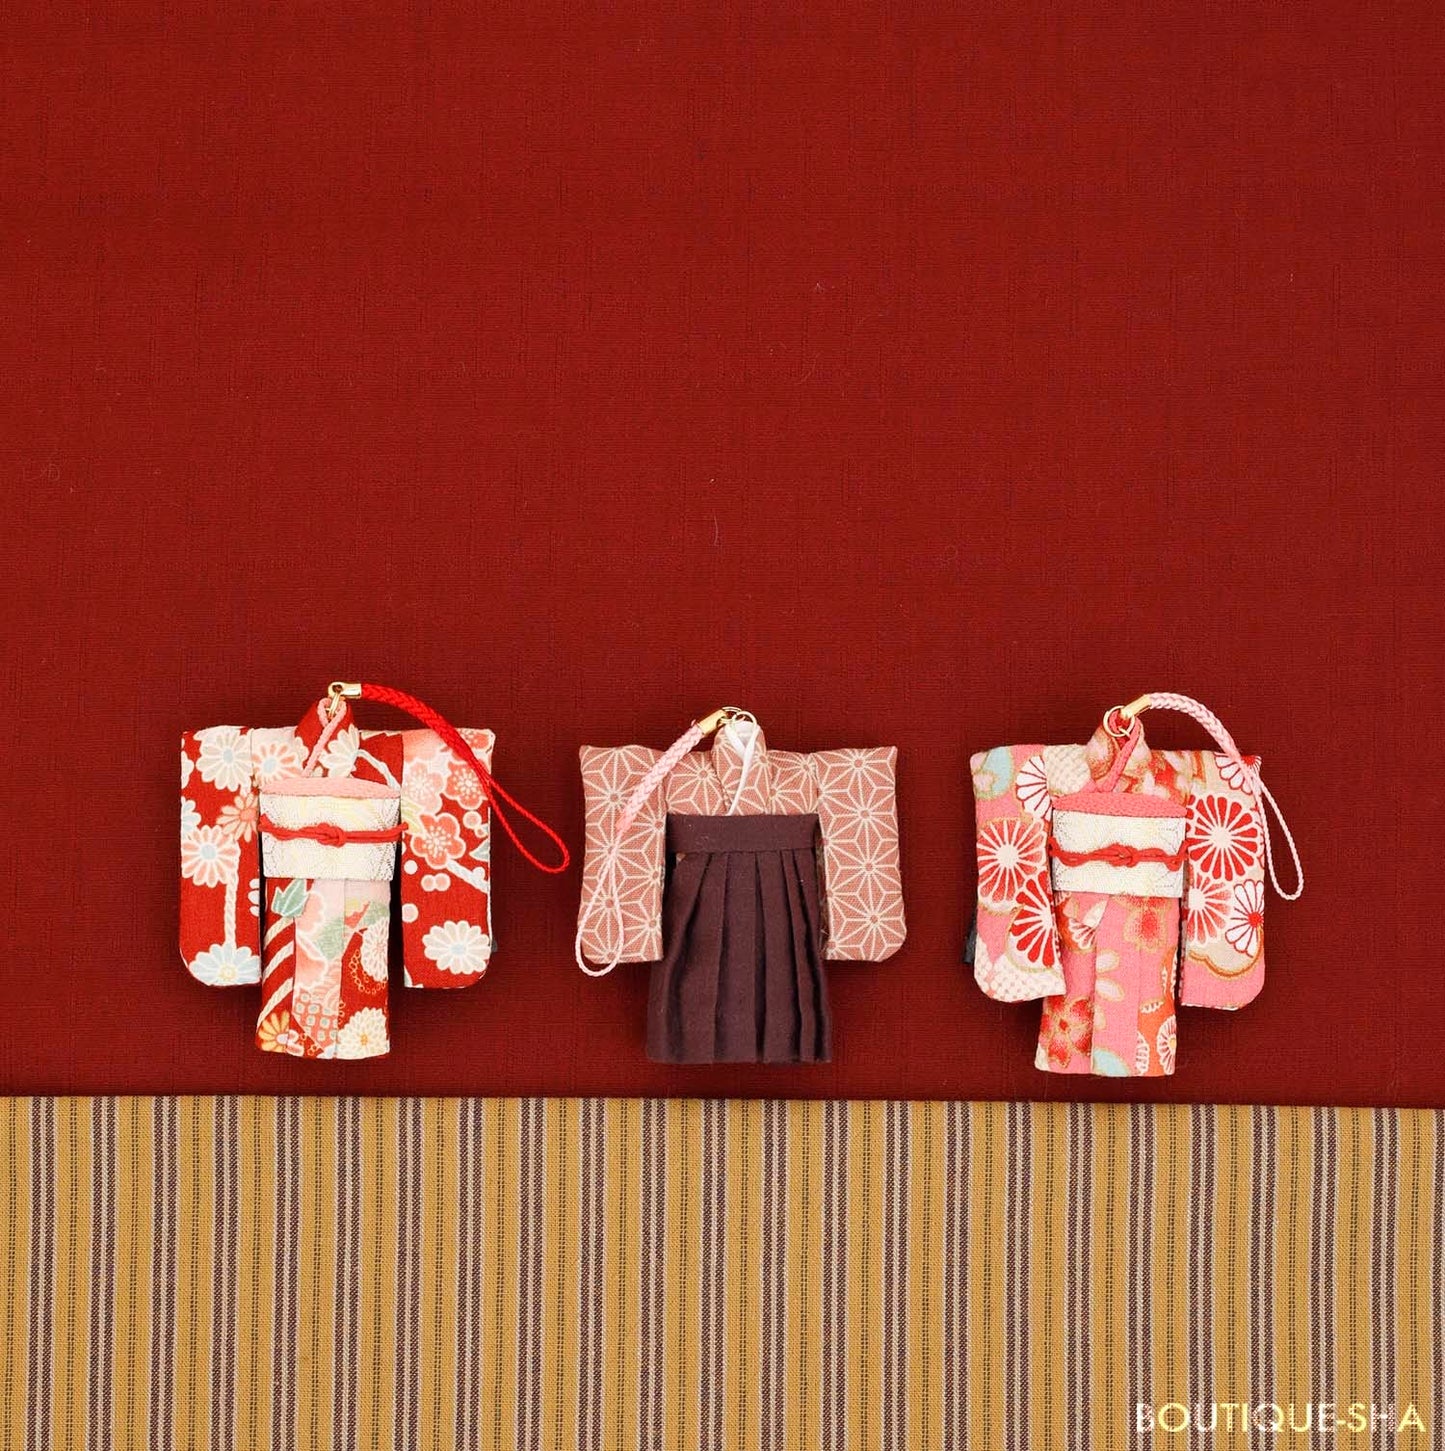 Japan | 享受製作微型和服 | books 書籍